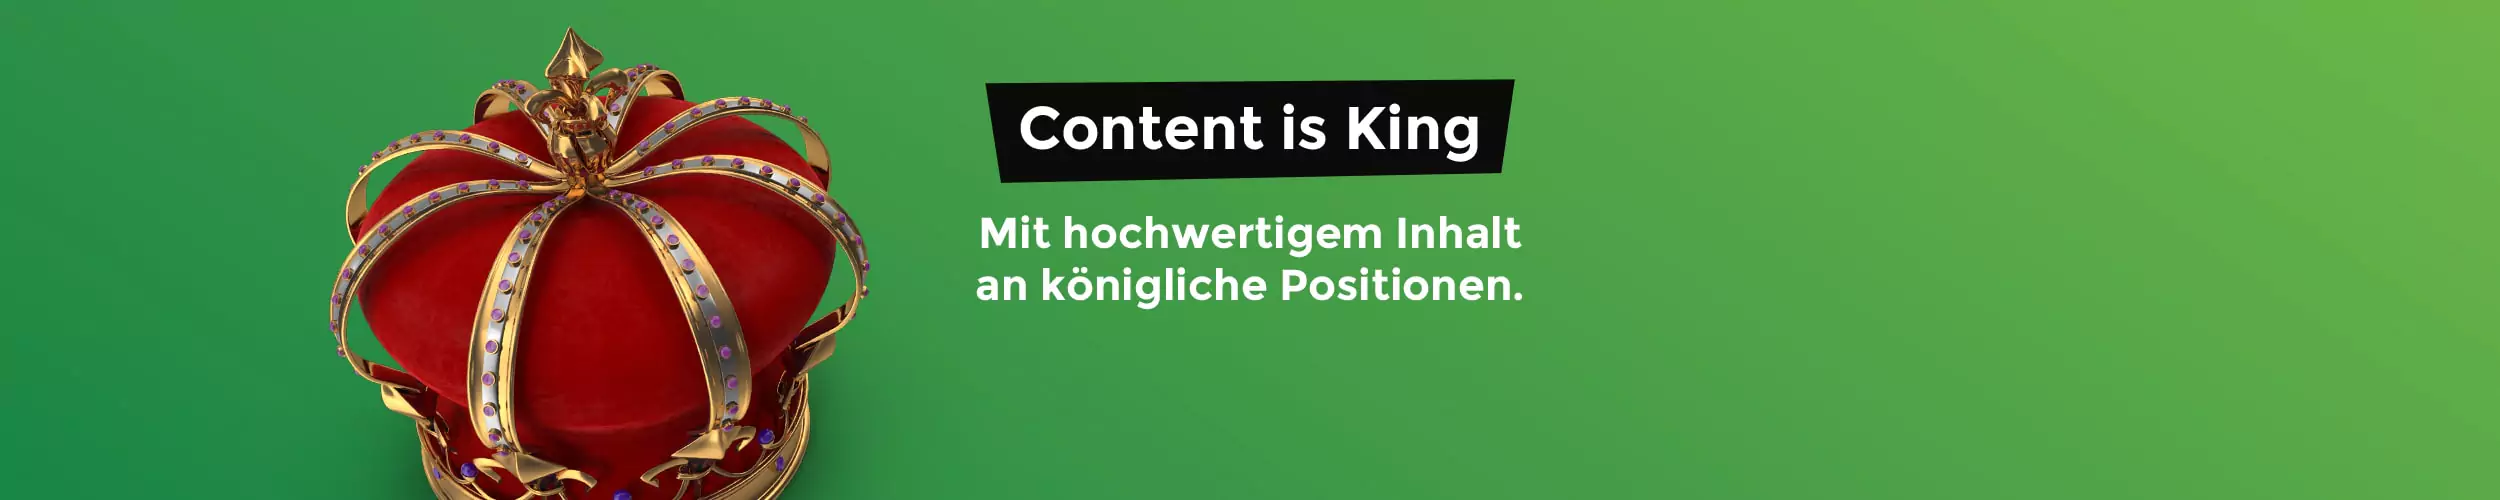 Content Marketing der Agentur purpix!